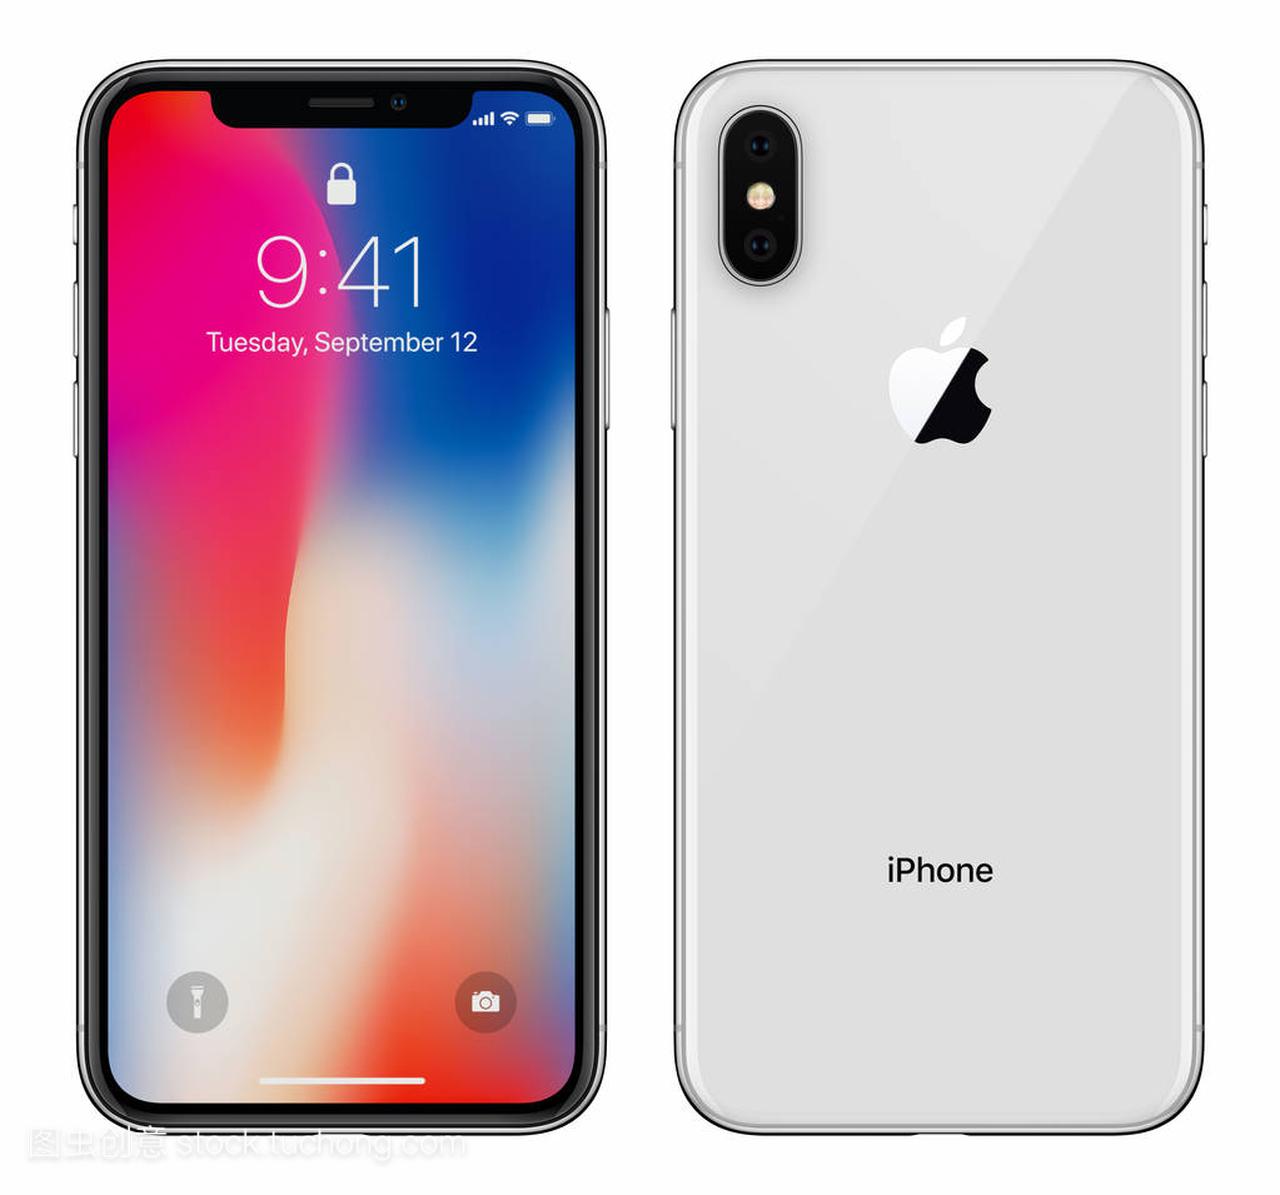 白苹果 iphone X 与 ios 11 锁屏界面前侧和背面